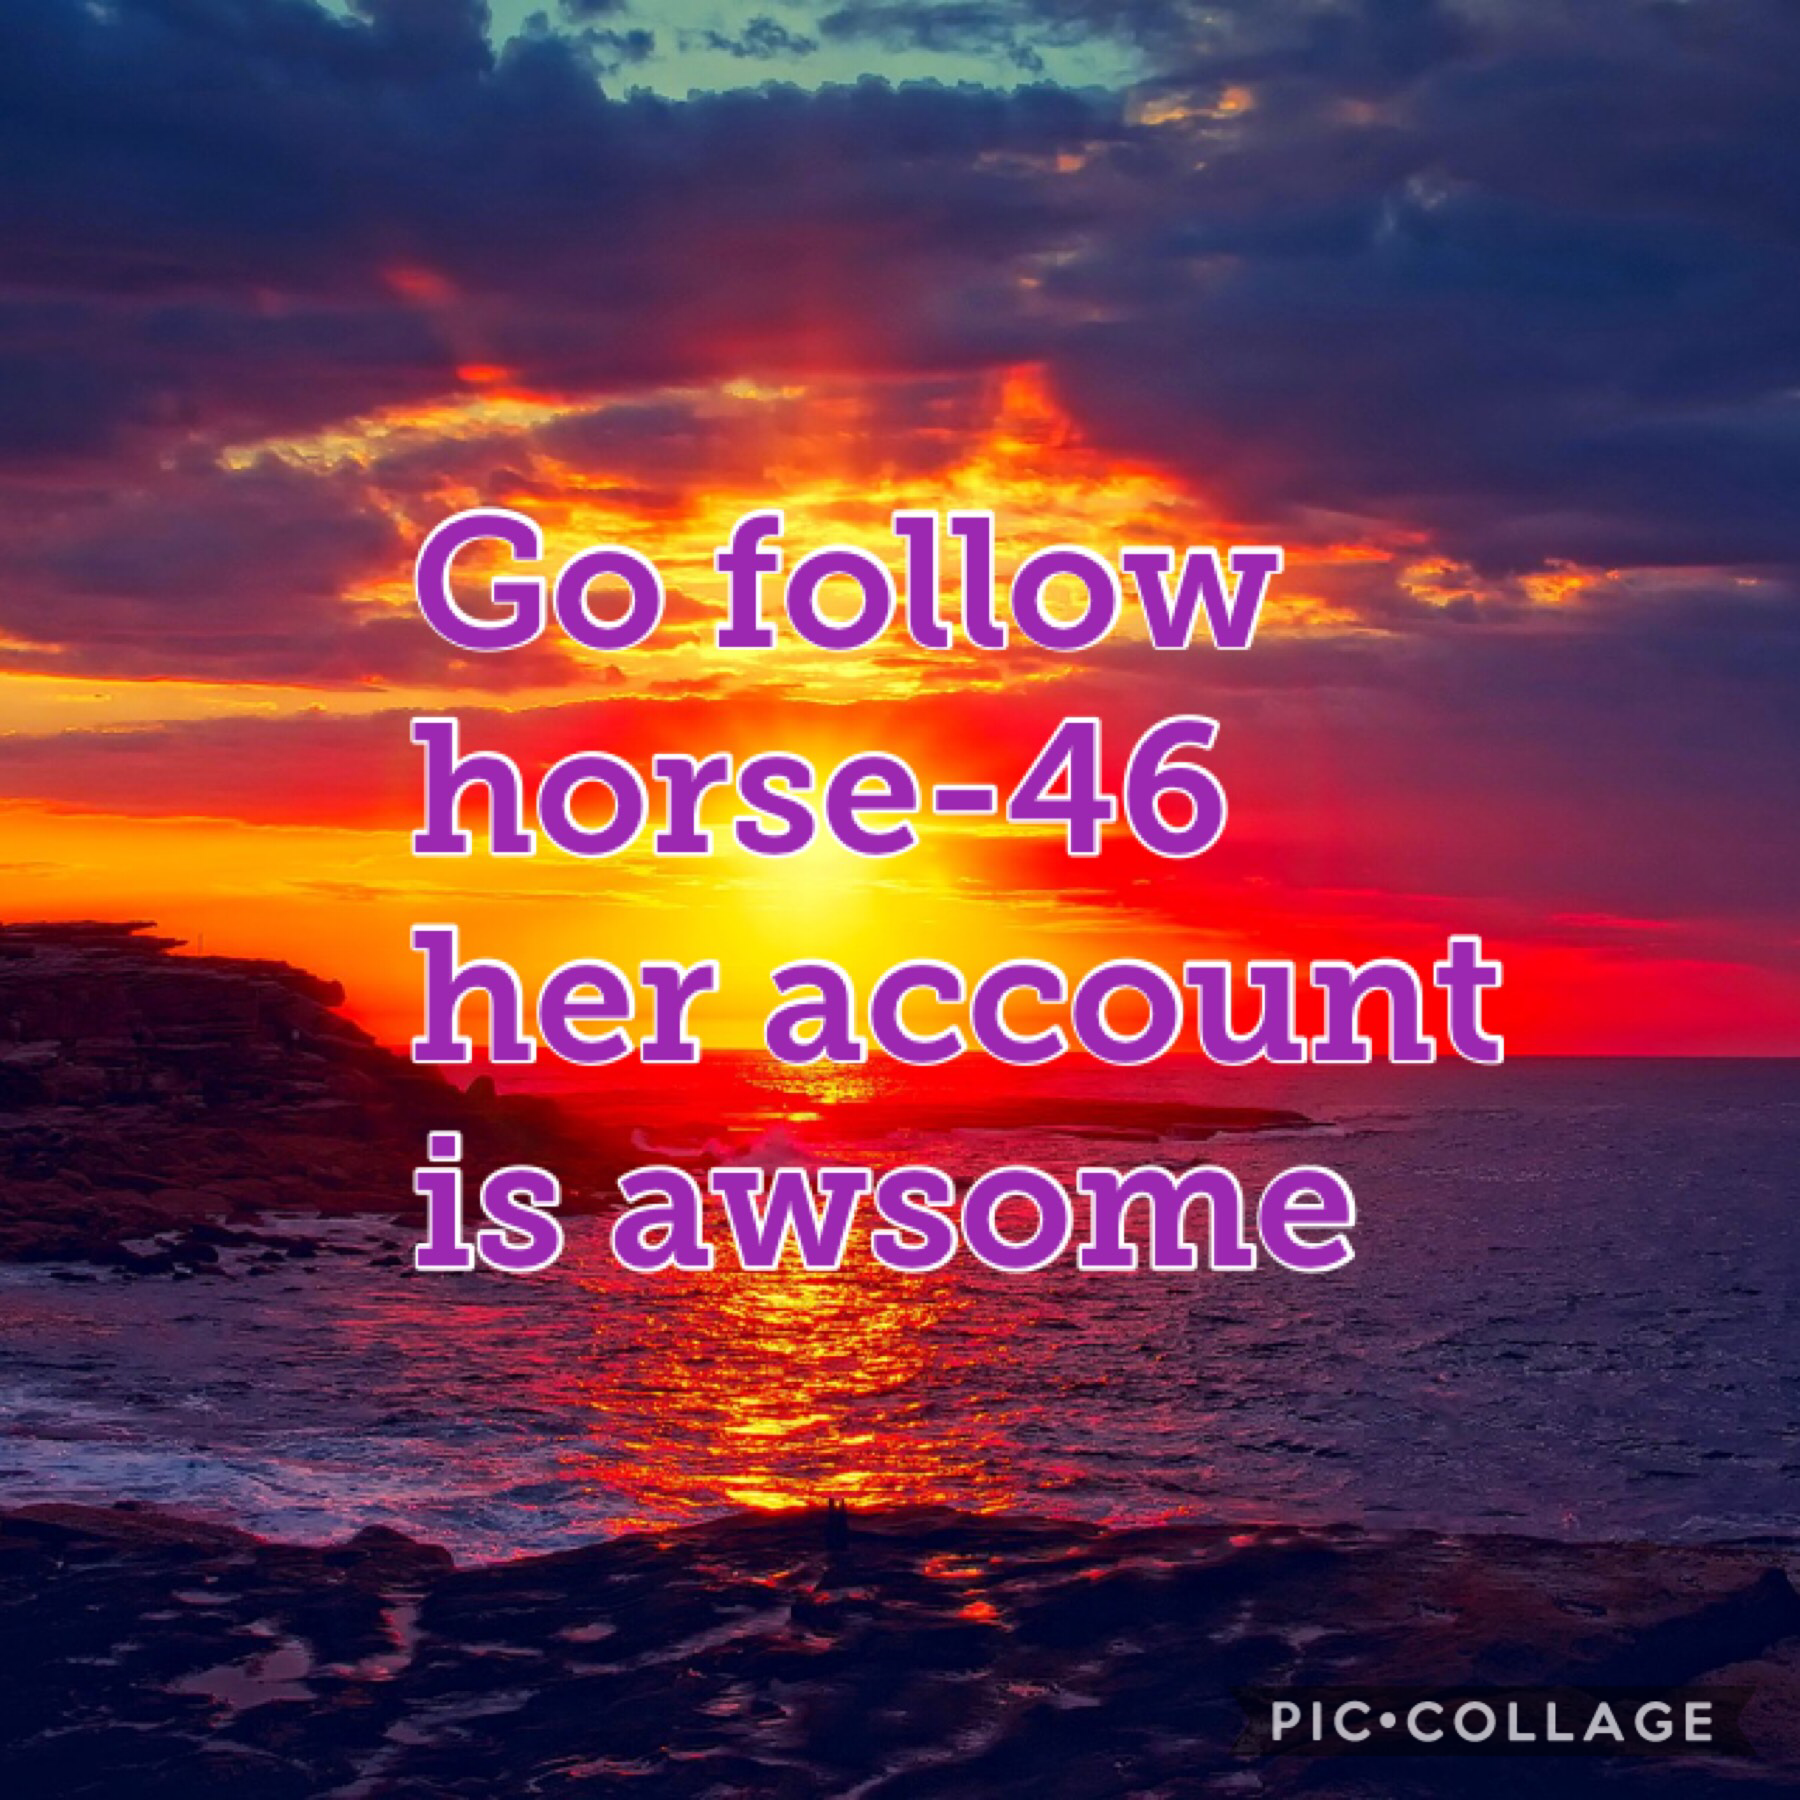 Go follow horse-46!!!